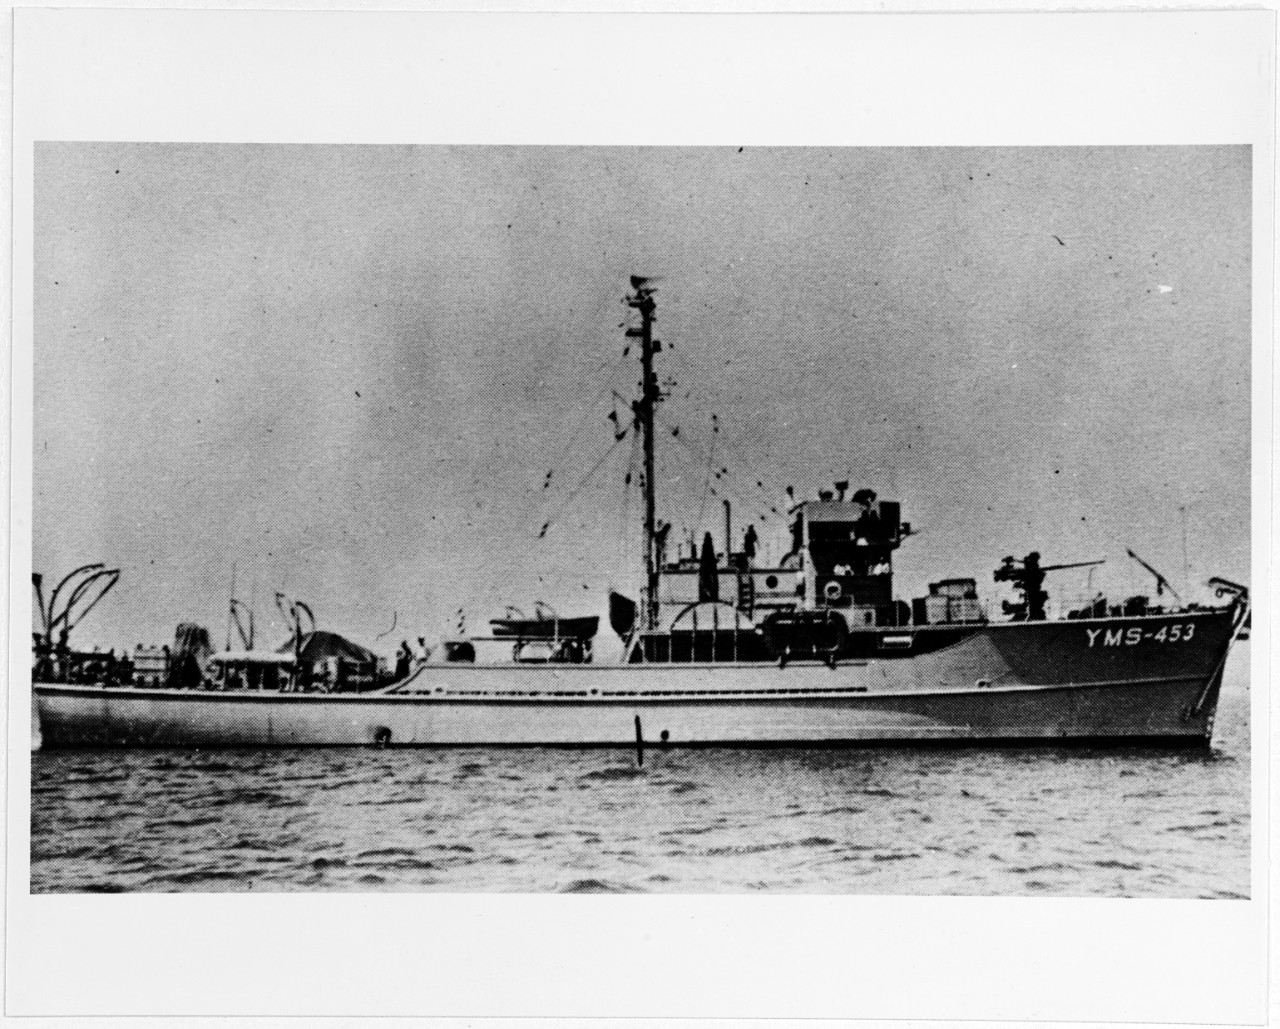 USS YMS-453